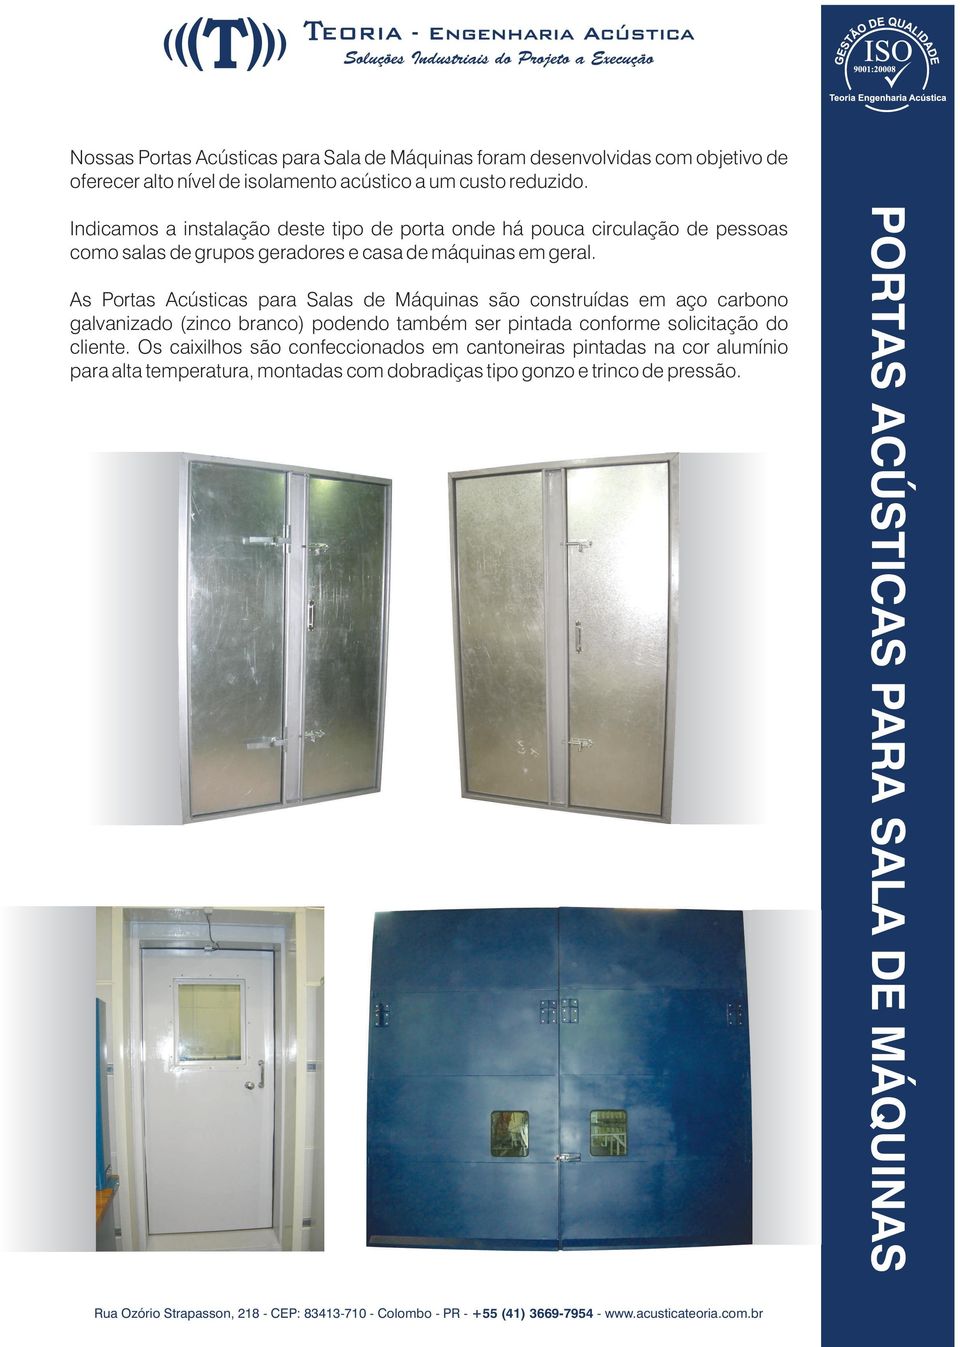 As Portas Acústicas para Salas de Máquinas são construídas em aço carbono galvanizado (zinco branco) podendo também ser pintada conforme solicitação do